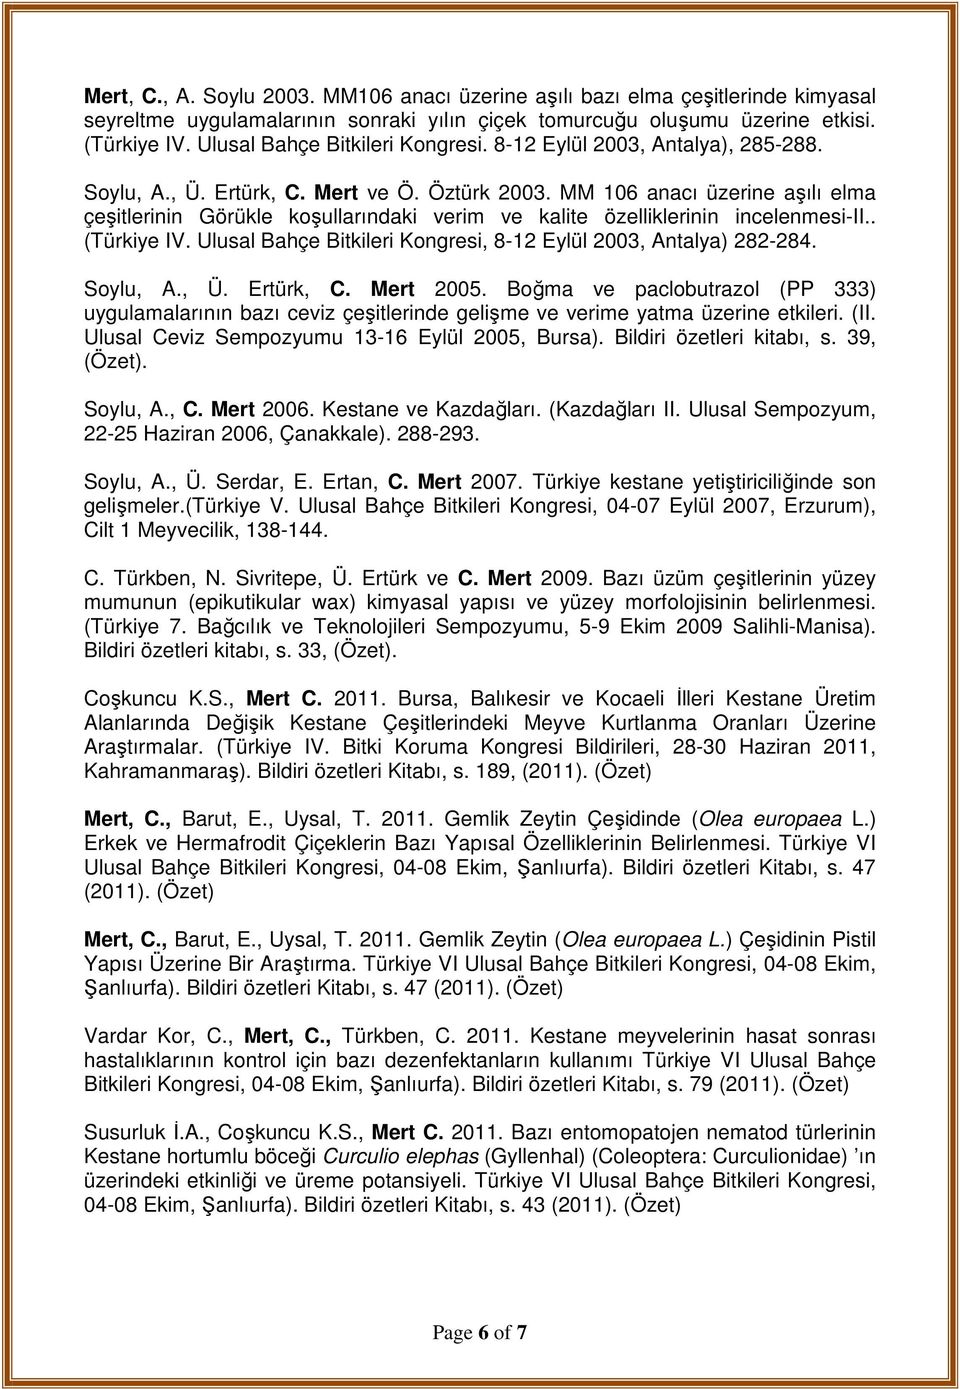 MM 106 anacı üzerine aşılı elma çeşitlerinin Görükle koşullarındaki verim ve kalite özelliklerinin incelenmesi-ii.. (Türkiye IV. Ulusal Bahçe Bitkileri Kongresi, 8-12 Eylül 2003, Antalya) 282-284.